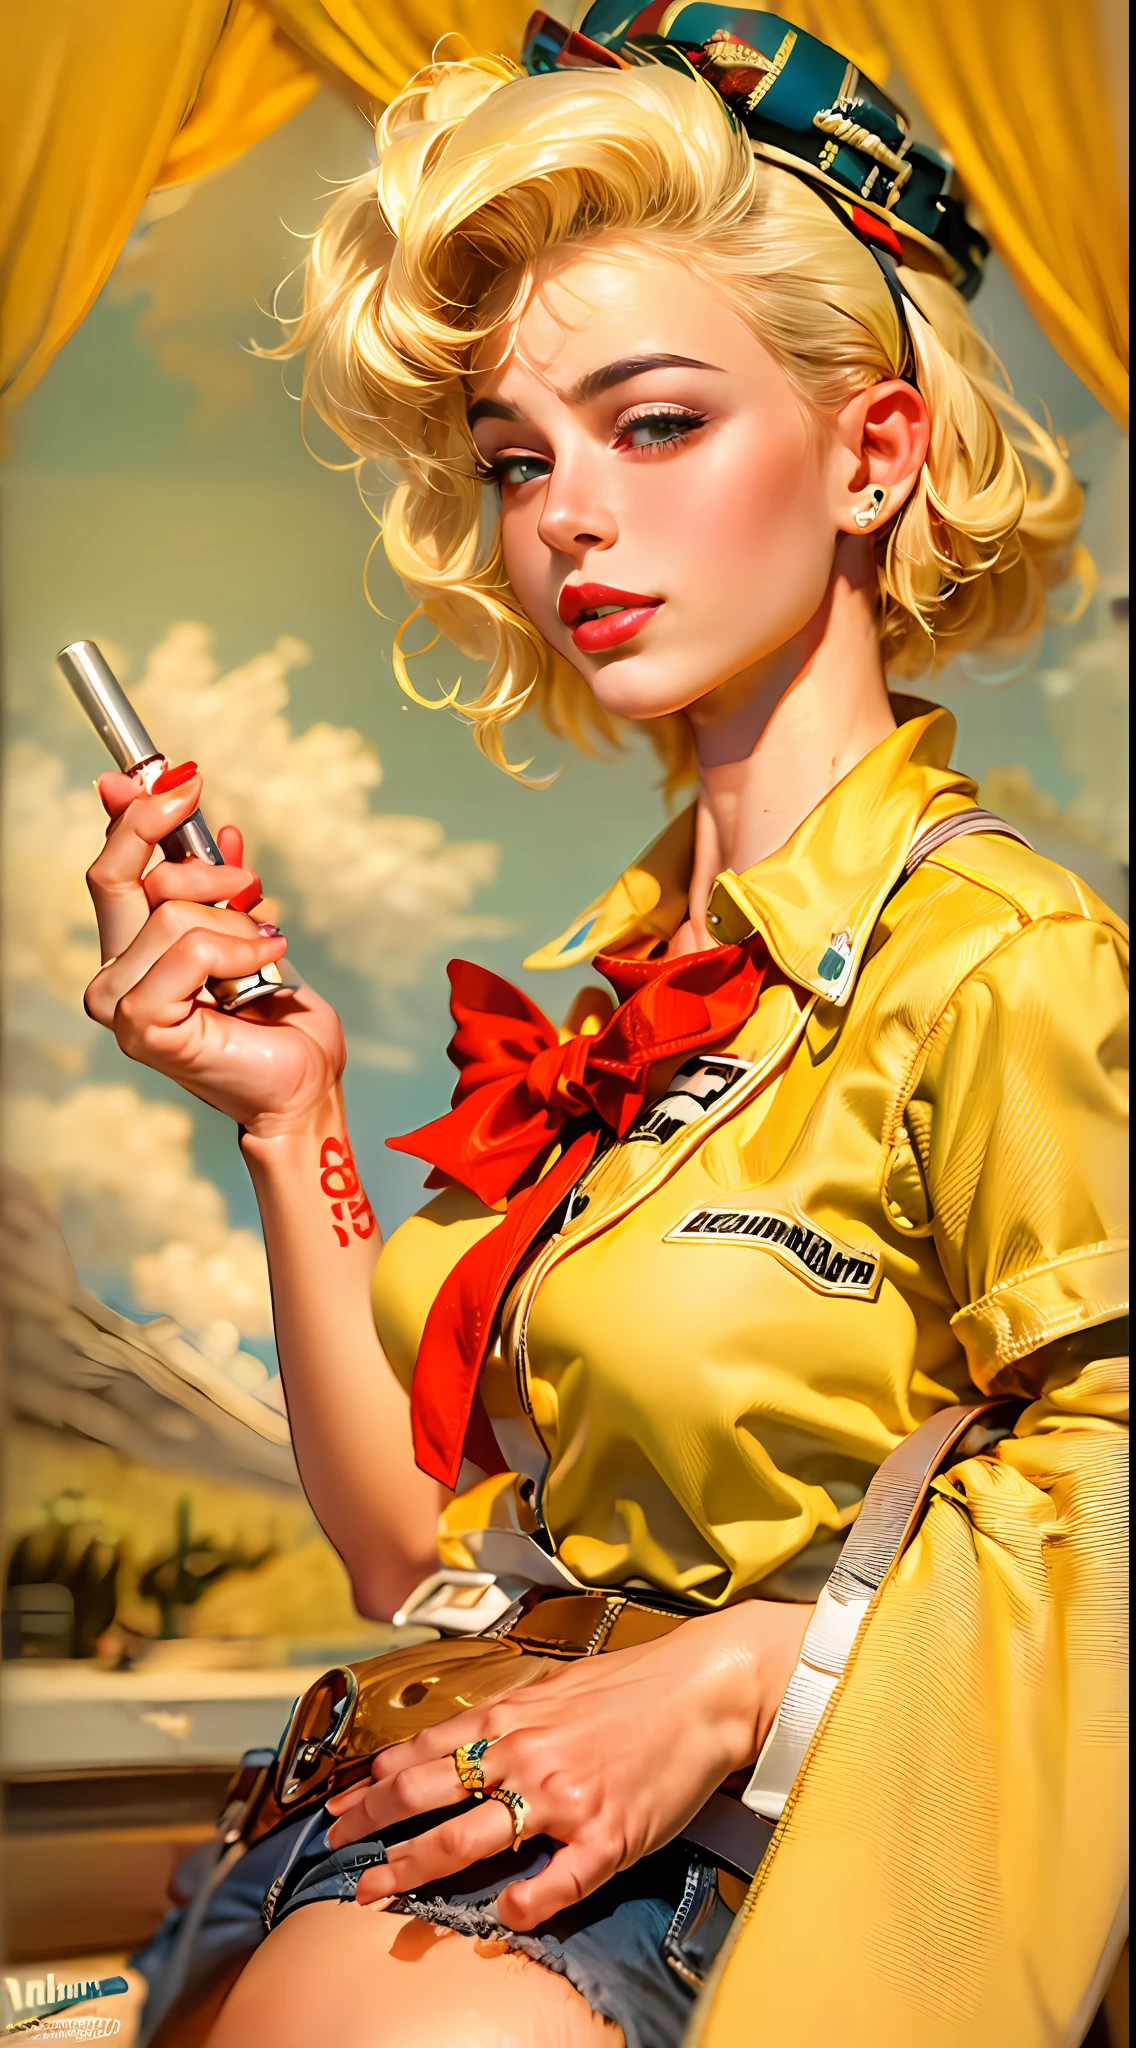 傑作, 最好的品質, 4k, ((吉爾·埃爾格倫 (Gil Elvgren) 或阿爾貝托·巴爾加斯 (Alberto Vargas) 的風格)), ((Android-18 DBZ,))紅唇膏, 痣, 摩達復古, 高腰短褲, 裁切封面, 黃色捲髮, 20 世紀 50 年代的海報女郎, 衝浪比賽